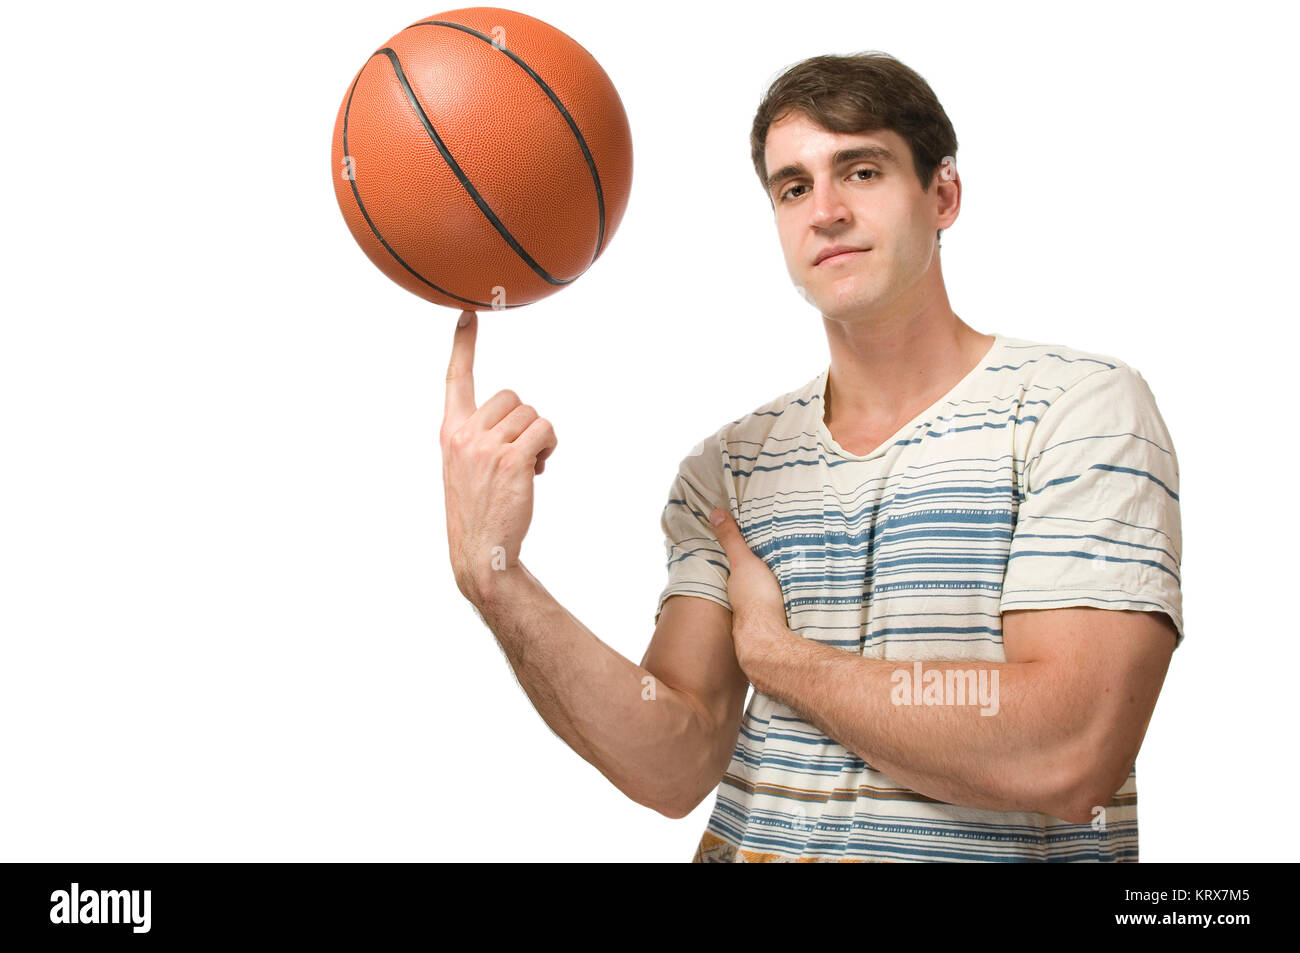 Seitliche Oberkörper-Ansicht eines jungen Mannes im t-Schirt einen Basketball auf dem Zeigefinger balancierend vor weißen Hintergrund. Stock Photo